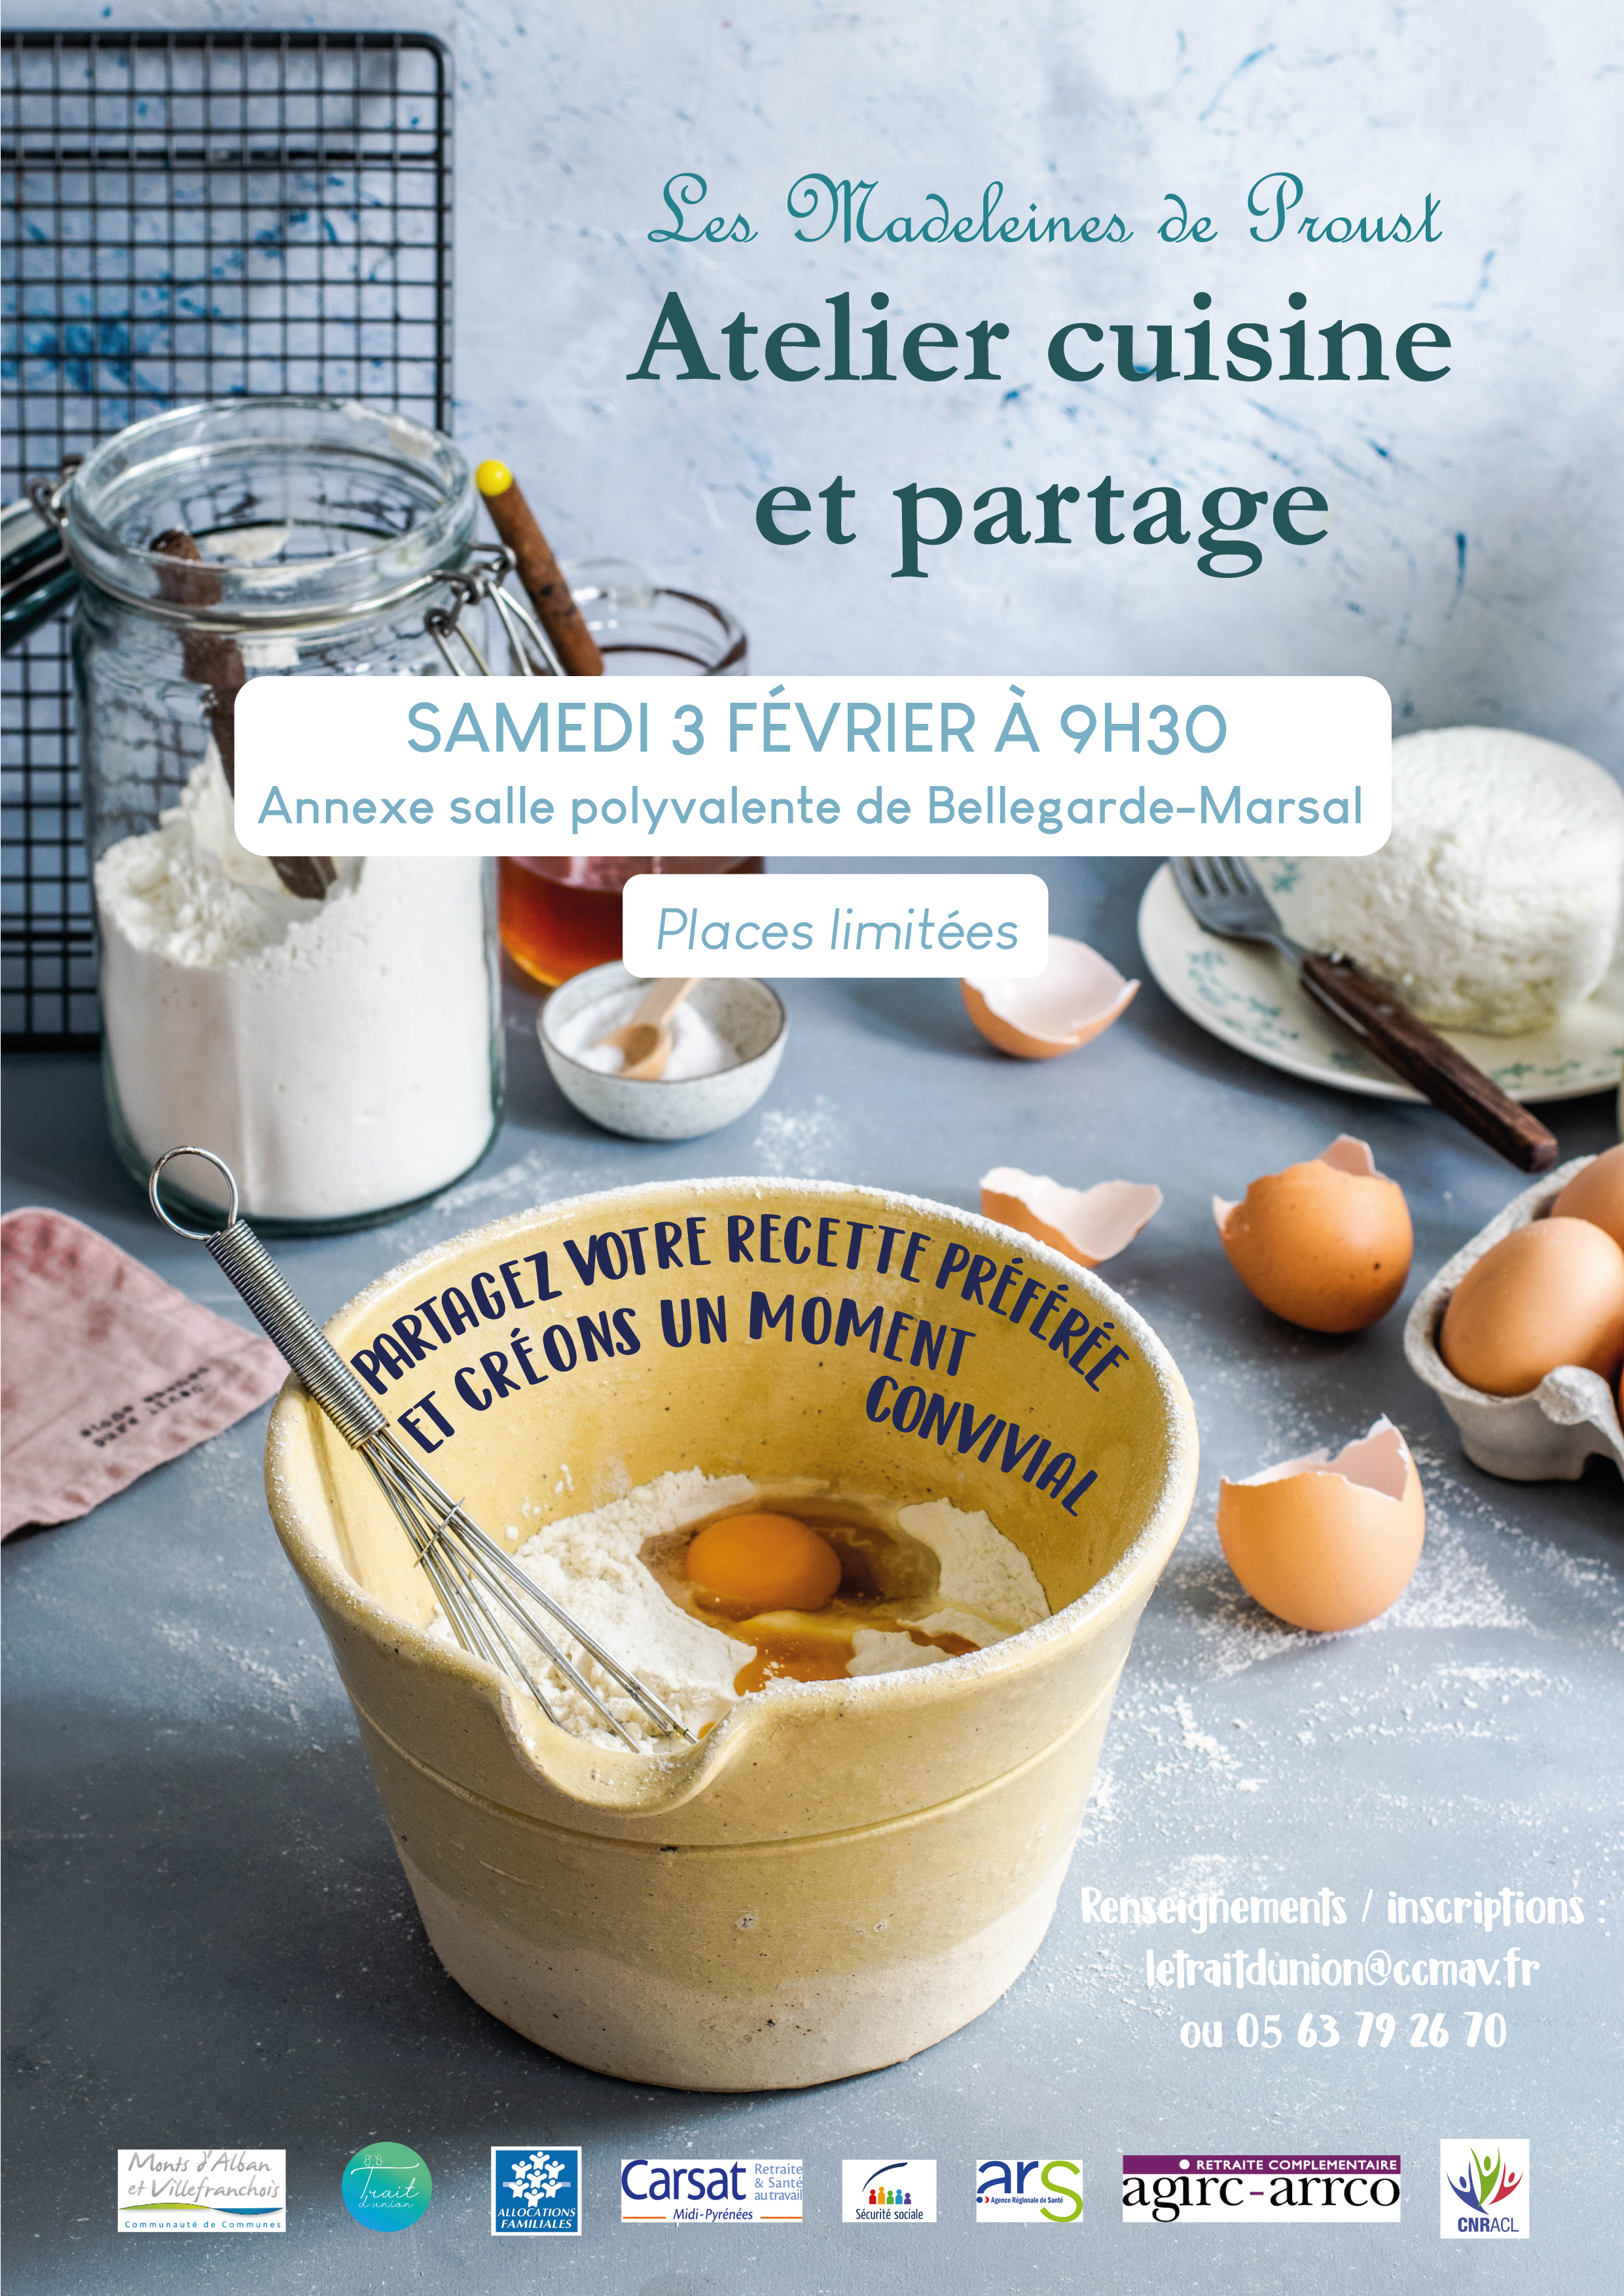 Atelier Cuisine "Les Madeleines de Proust" à Bellegarde-Marsal